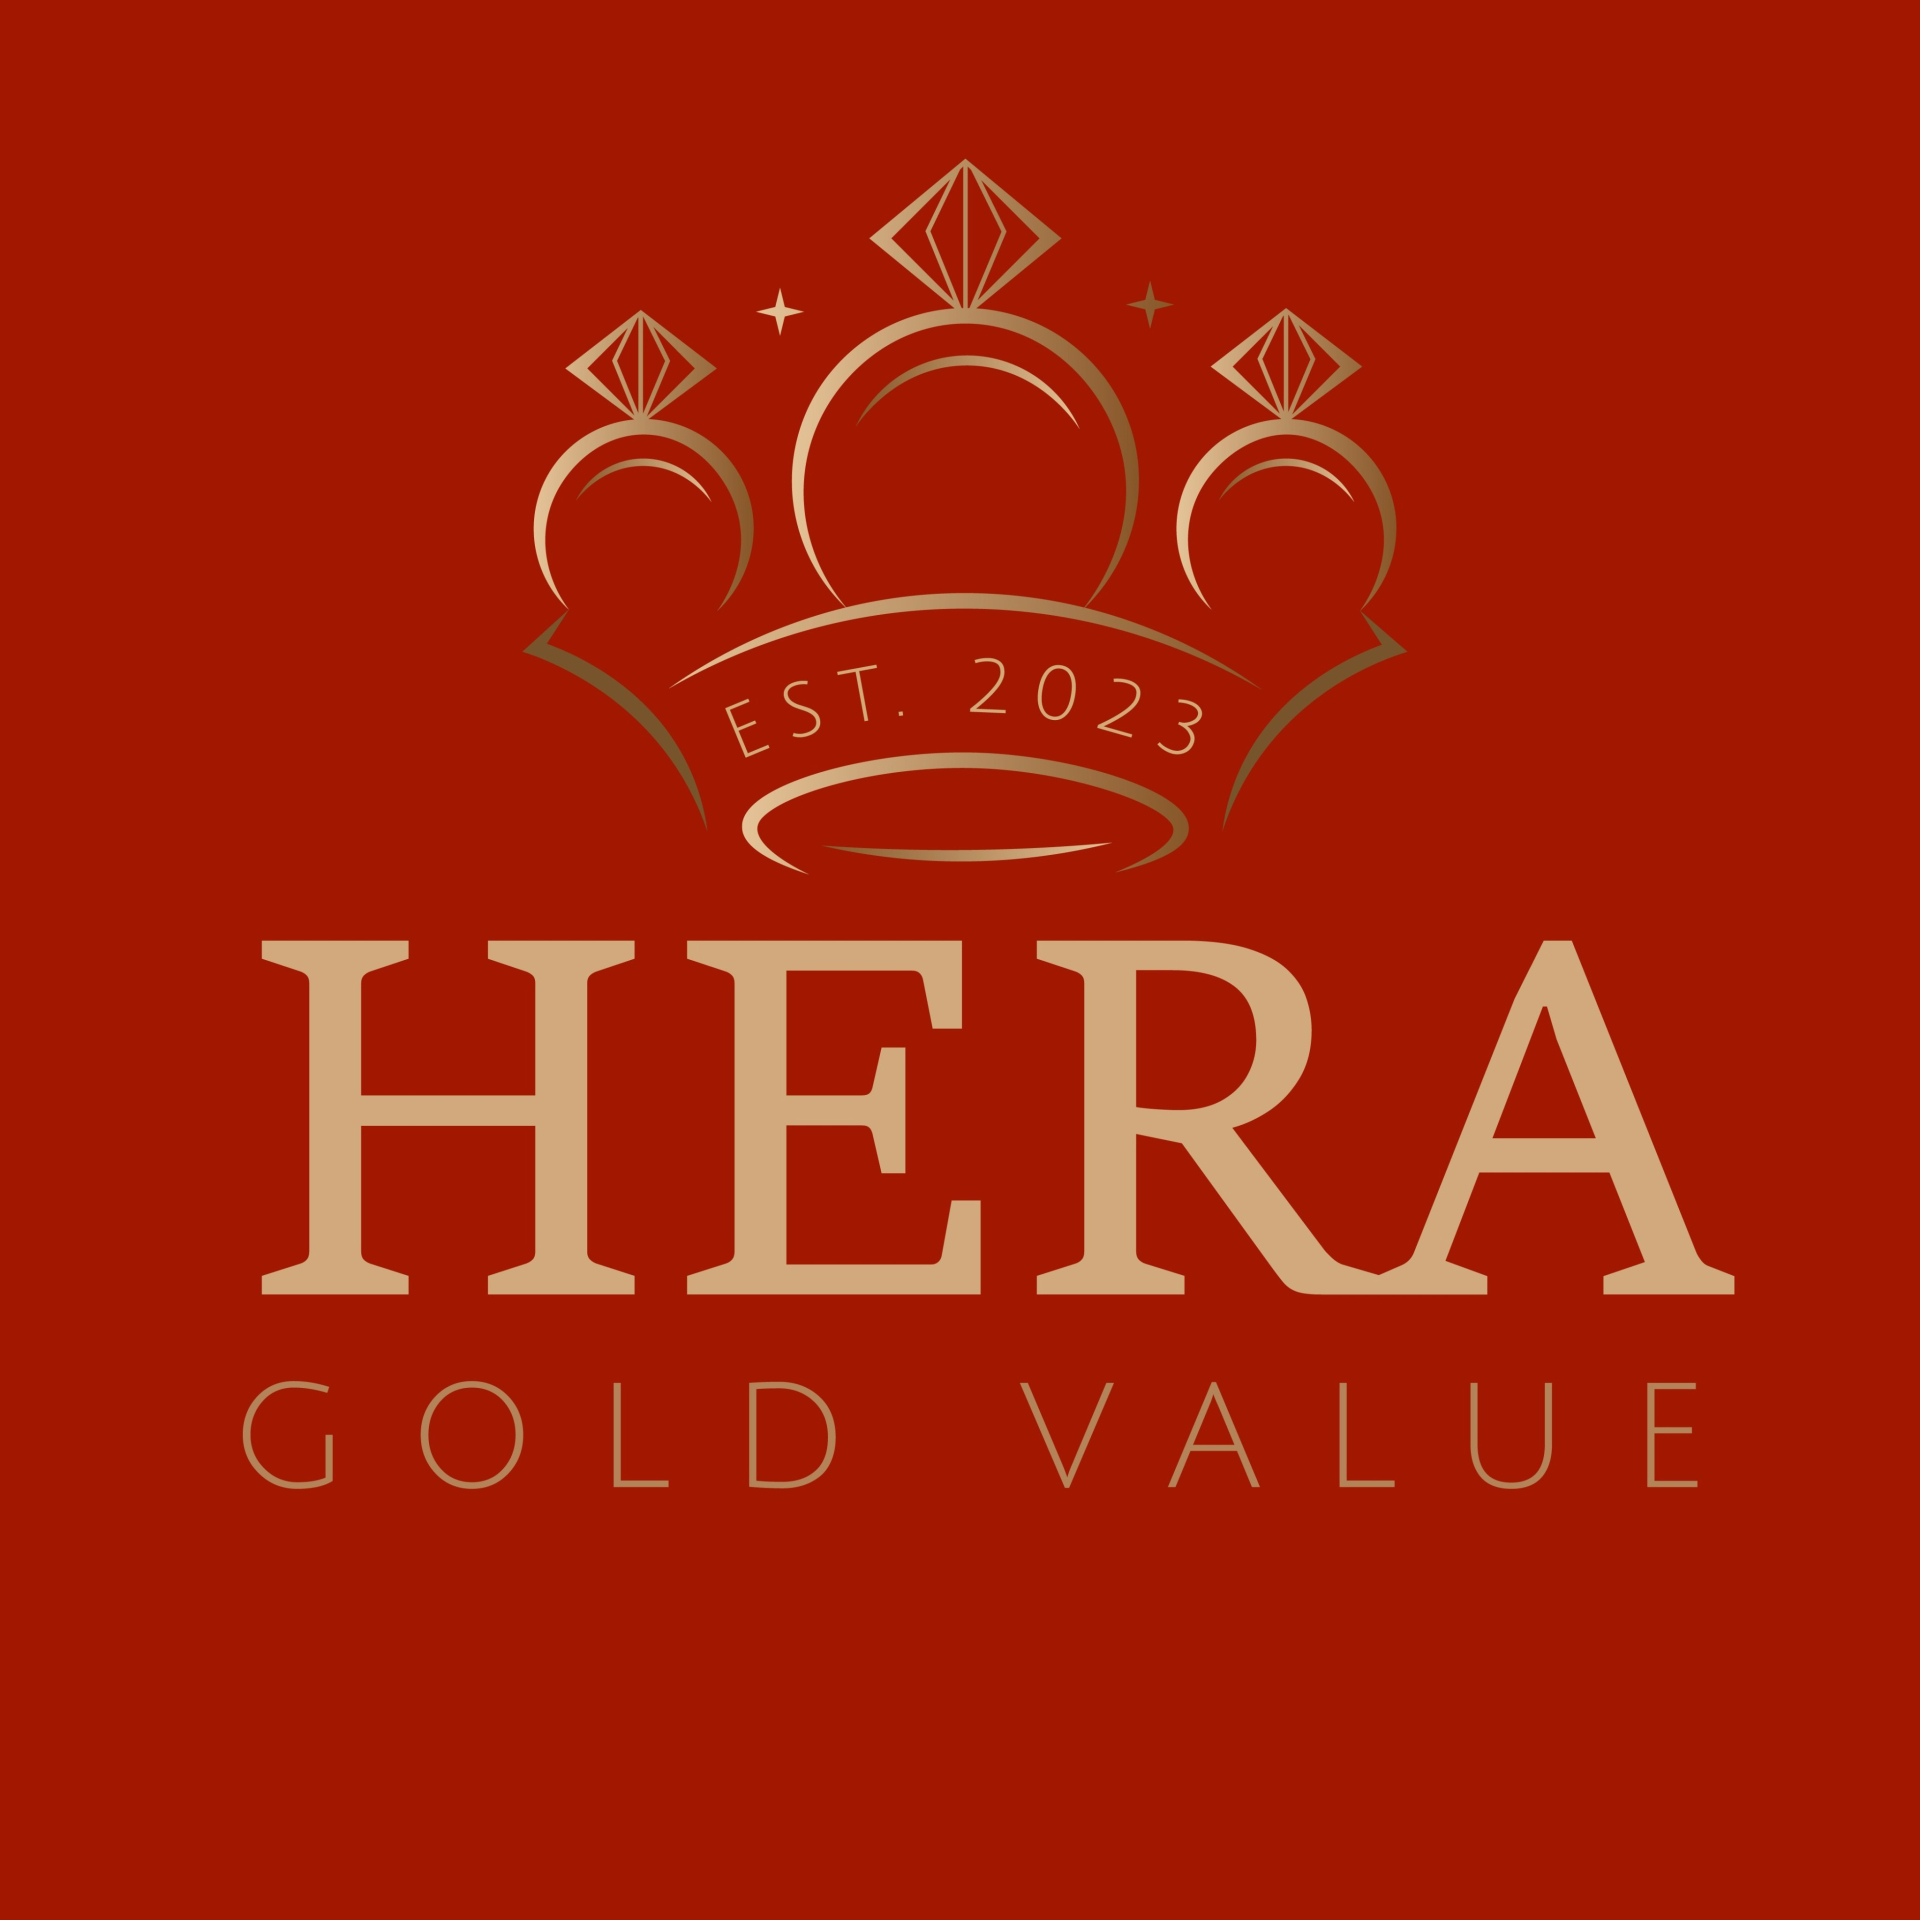 Tiệm vàng Hera